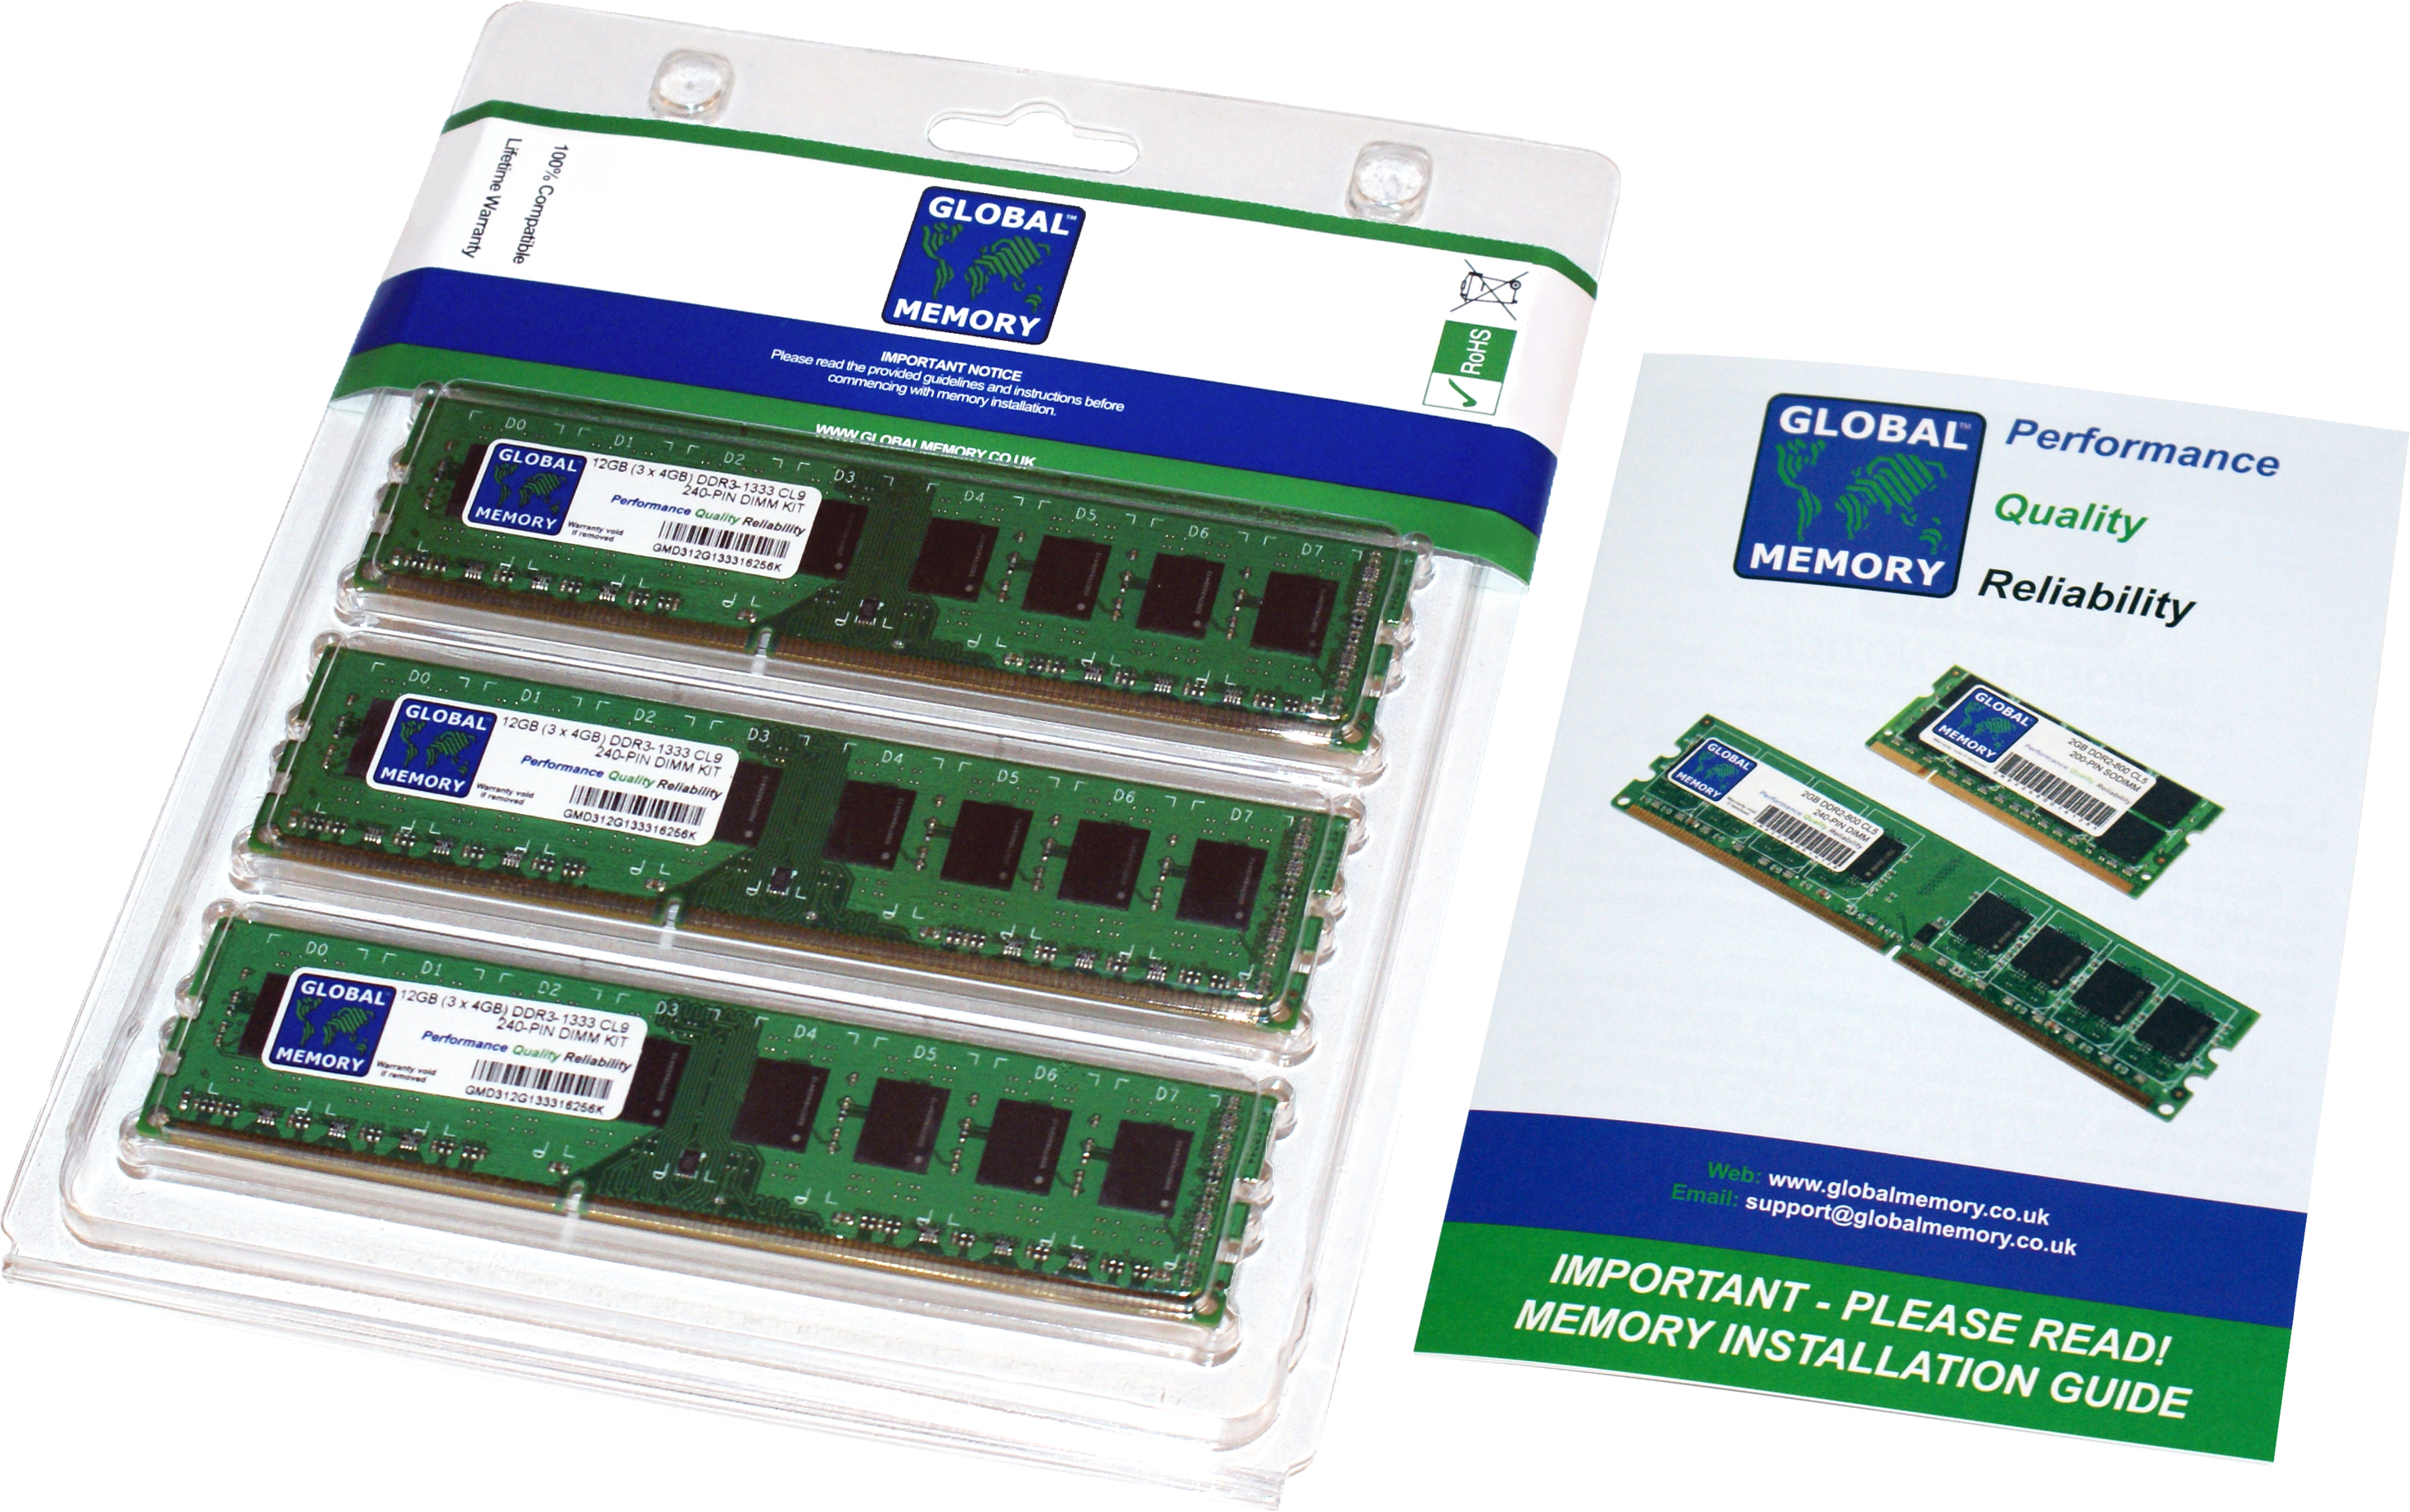 12GB (3 x 4GB) DDR3 1866MHz PC3-14900 240-PIN DIMM MEMORY RAM KIT FOR HEWLETT-PACKARD DESKTOPS